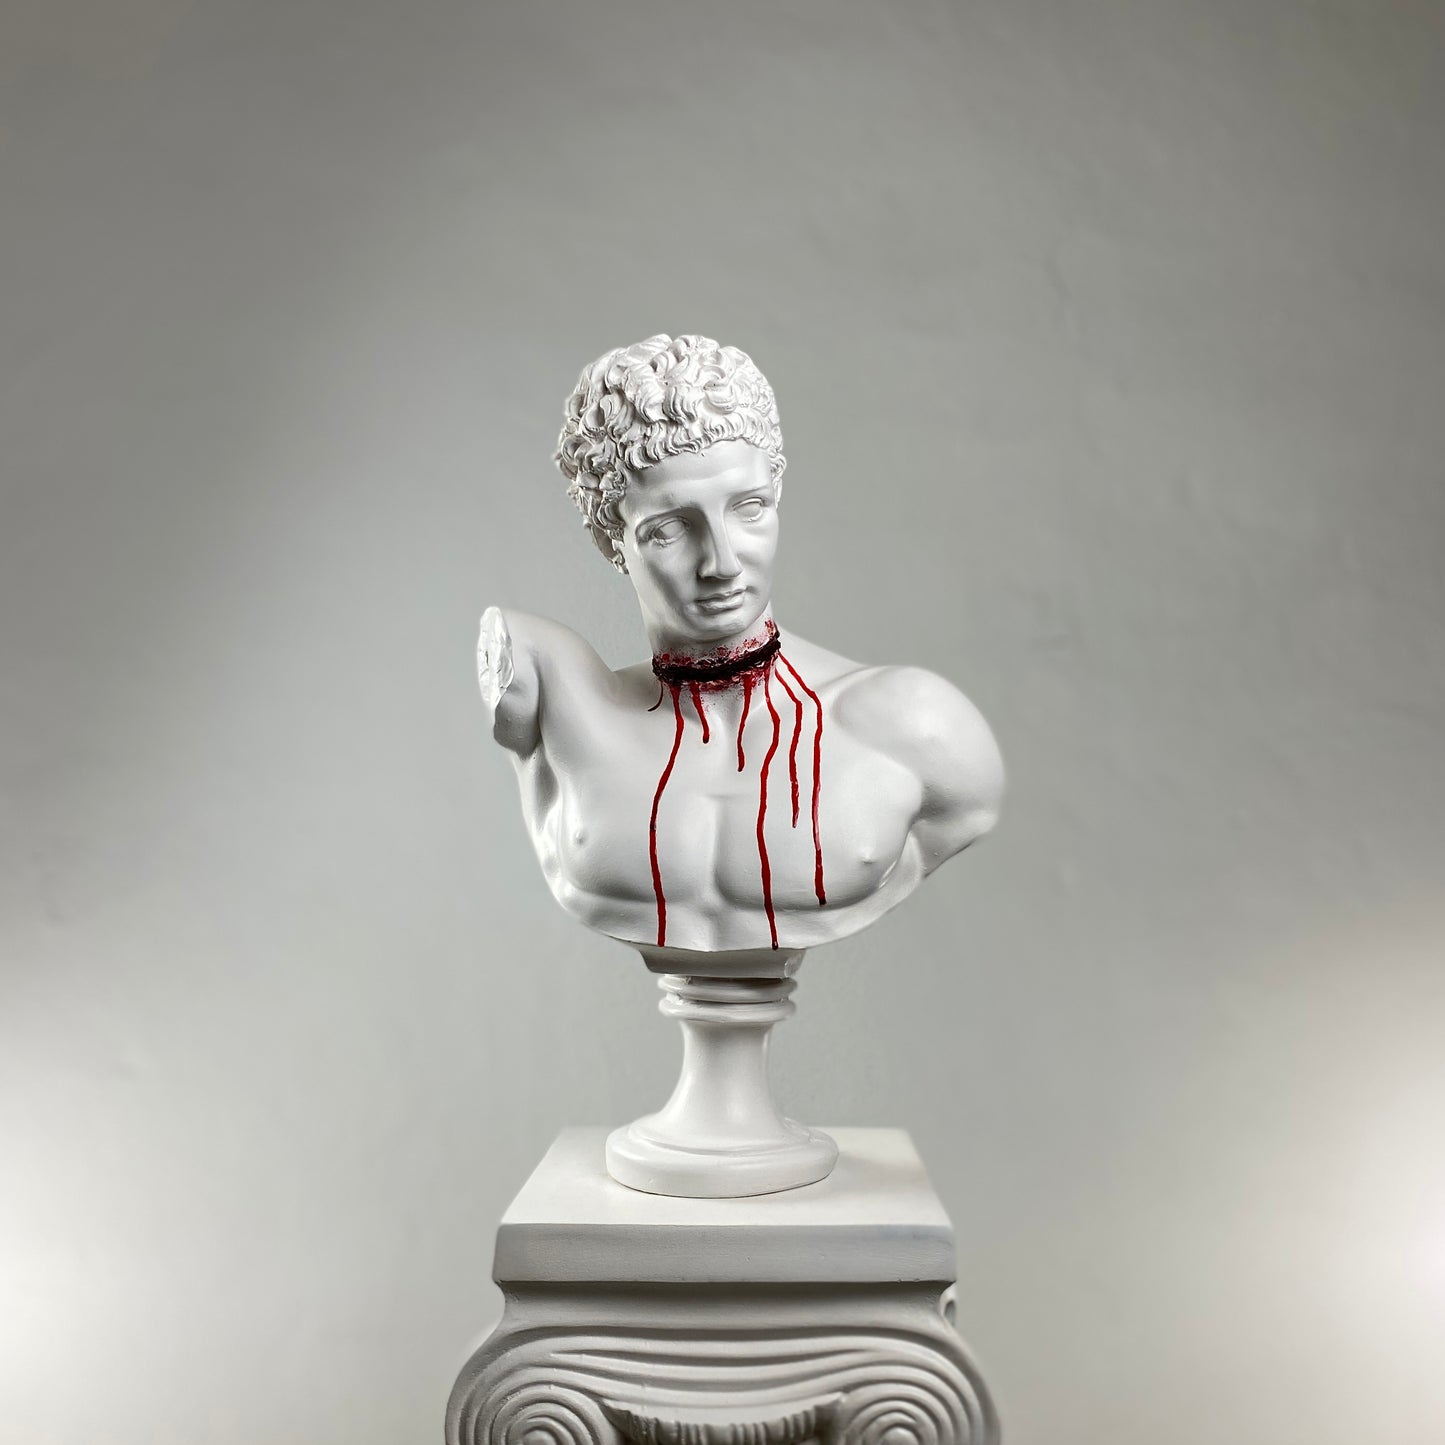 Hermes 'Cut Throat' Pop Art Sculpture, Modern Home Decor, Large Sculpture